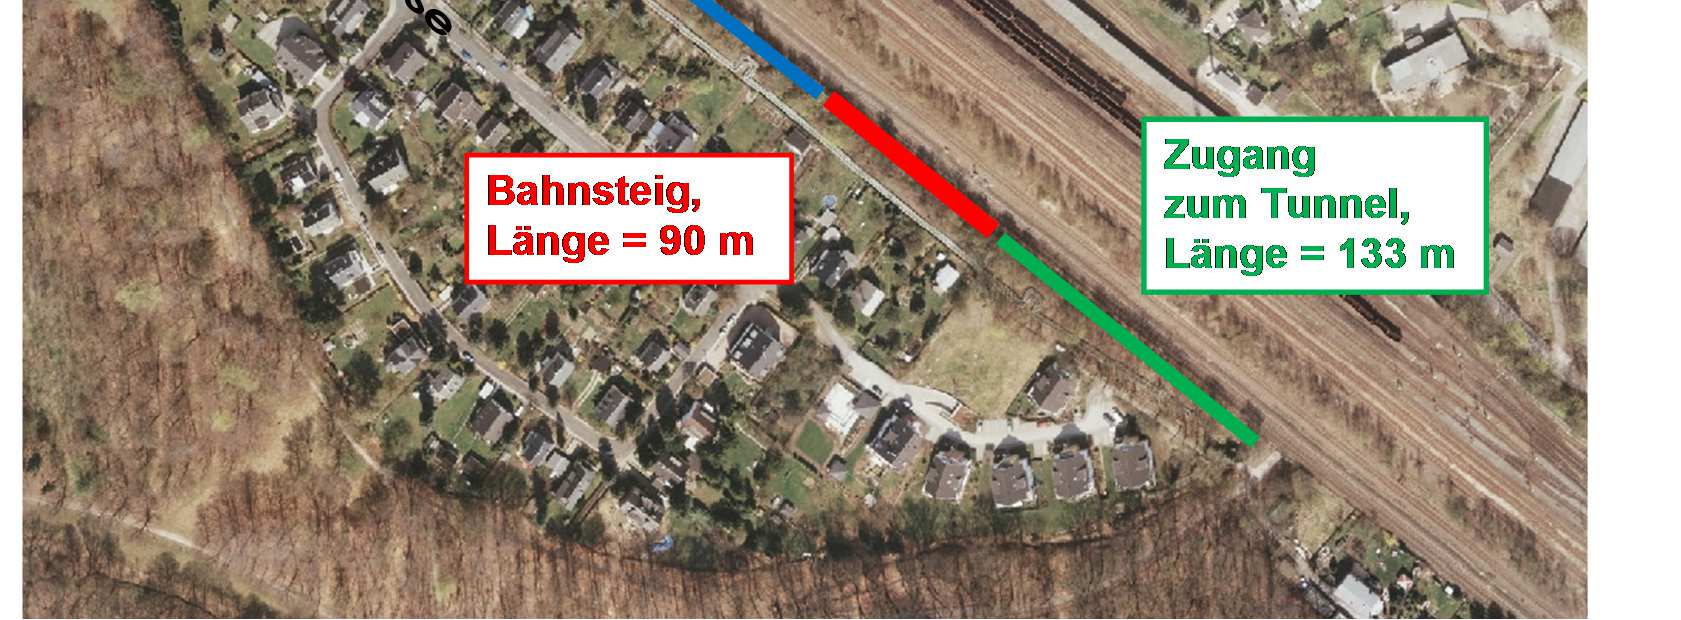 Angebotsnetz 2017+ Küchwald Bahnsteig (rot) und Zugang zum Tunnel (grün) wird von DB